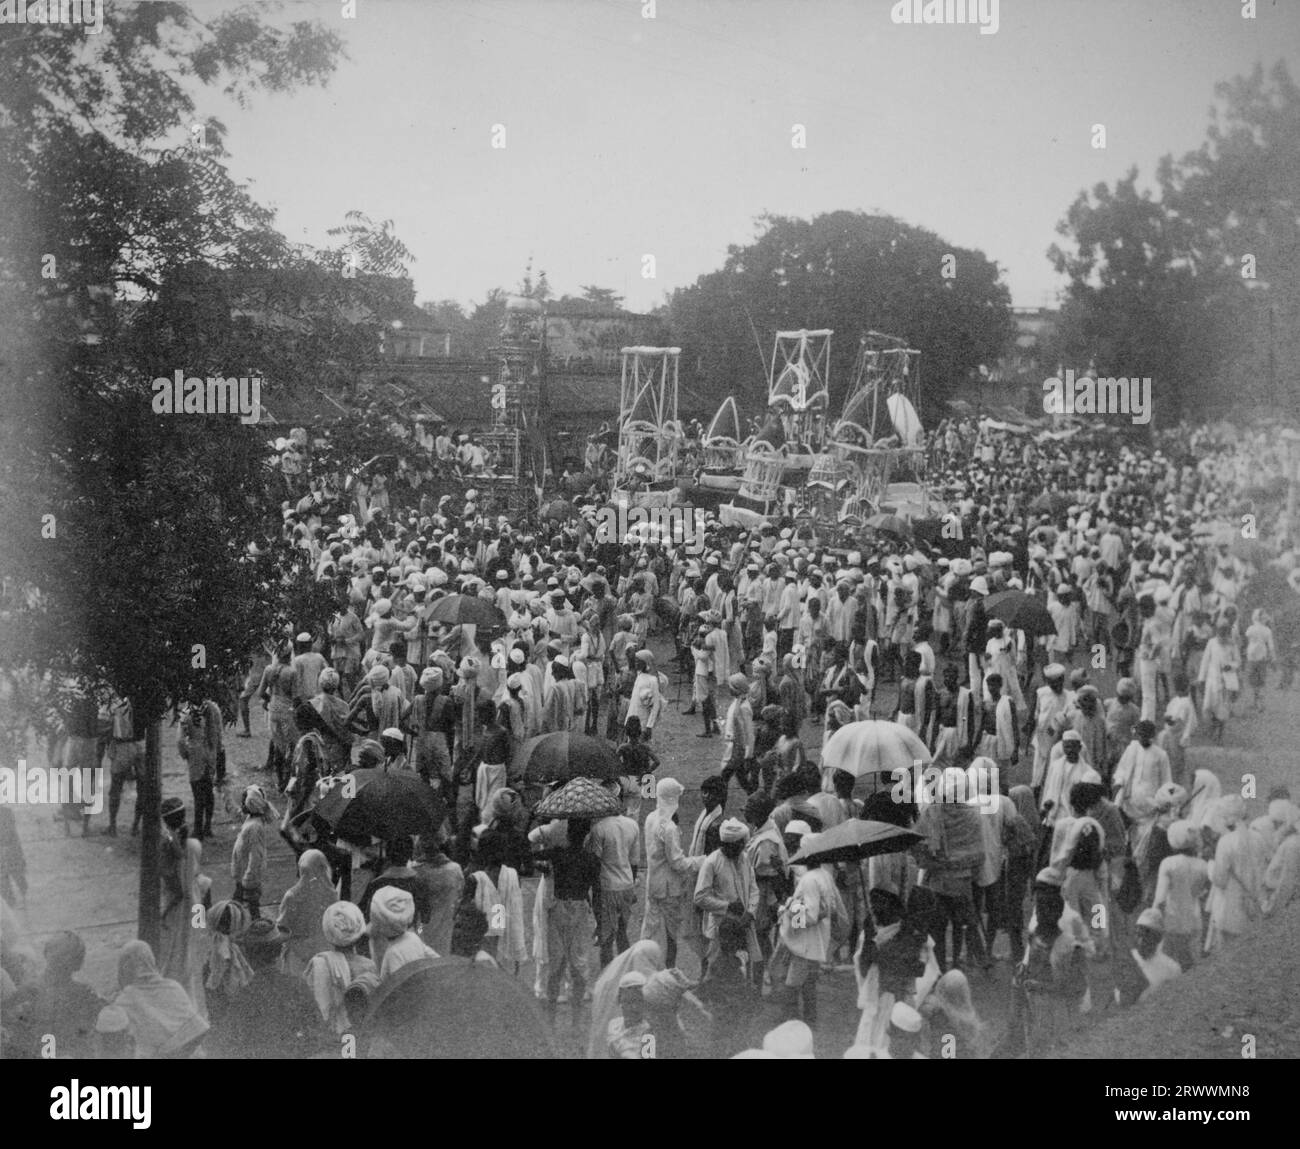 Religiöse Prozession mit geschmückten Wagen inmitten eines großen Festes von traditionell gekleideten Indianern. Bäume säumen den Platz und Gebäude sind im Hintergrund zu sehen. Stockfoto